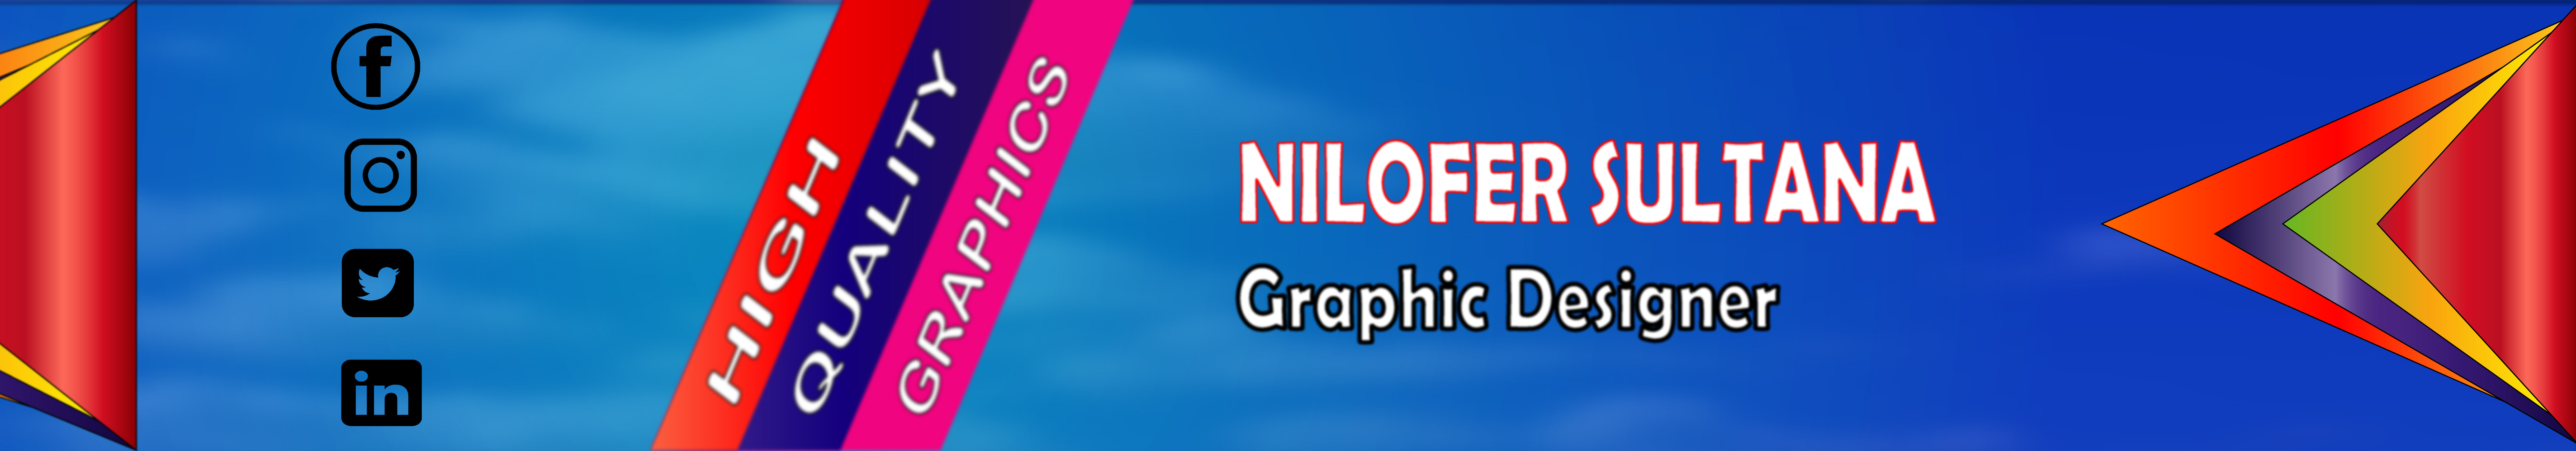 Banner de perfil de Nilofer Sultana